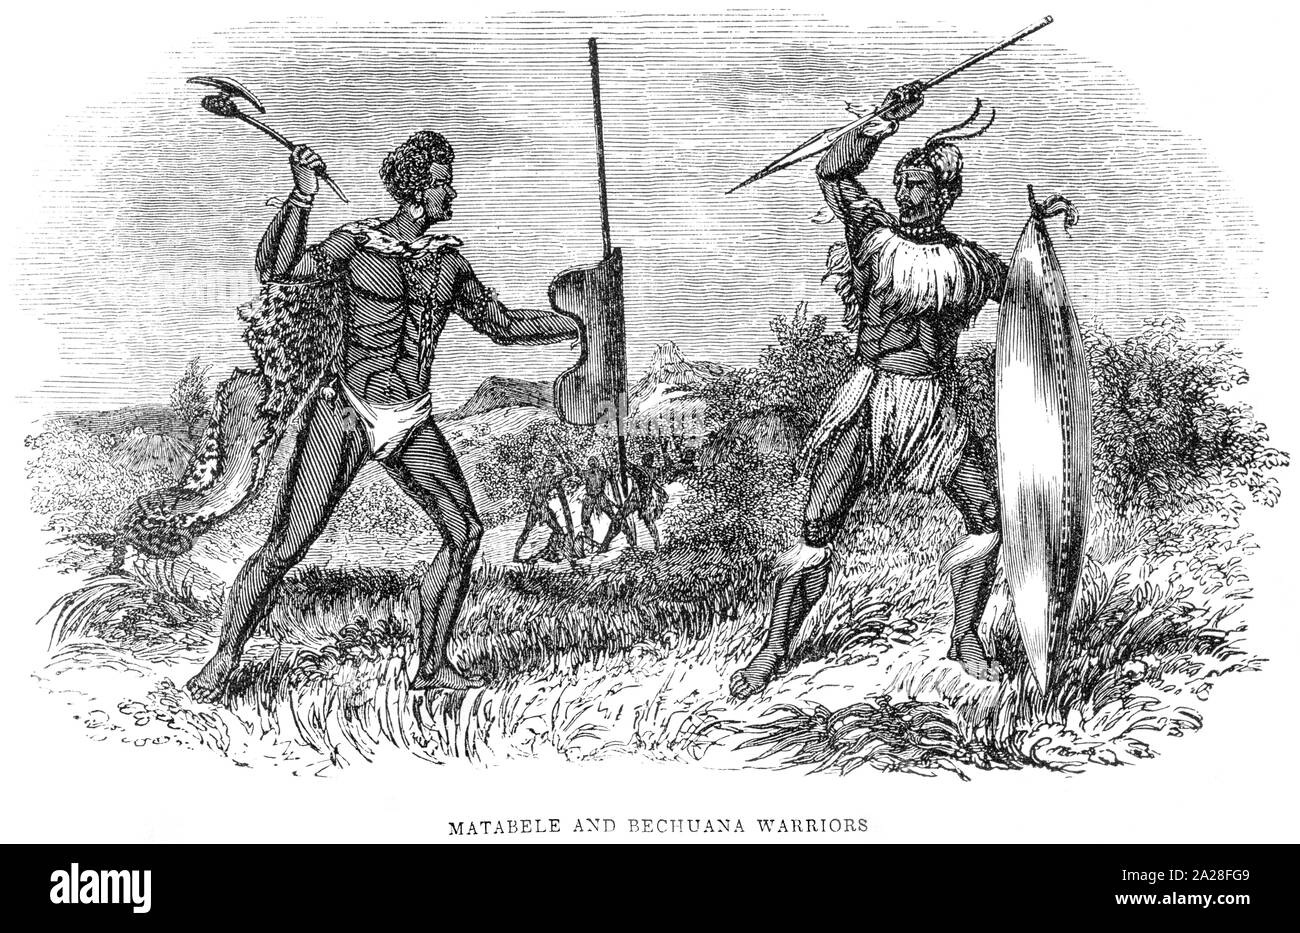 Una ilustración de Matabele y Bechuana Guerreros en Sudáfrica escaneadas en alta resolución desde un libro de Robert Moffat impreso en 1842. Foto de stock